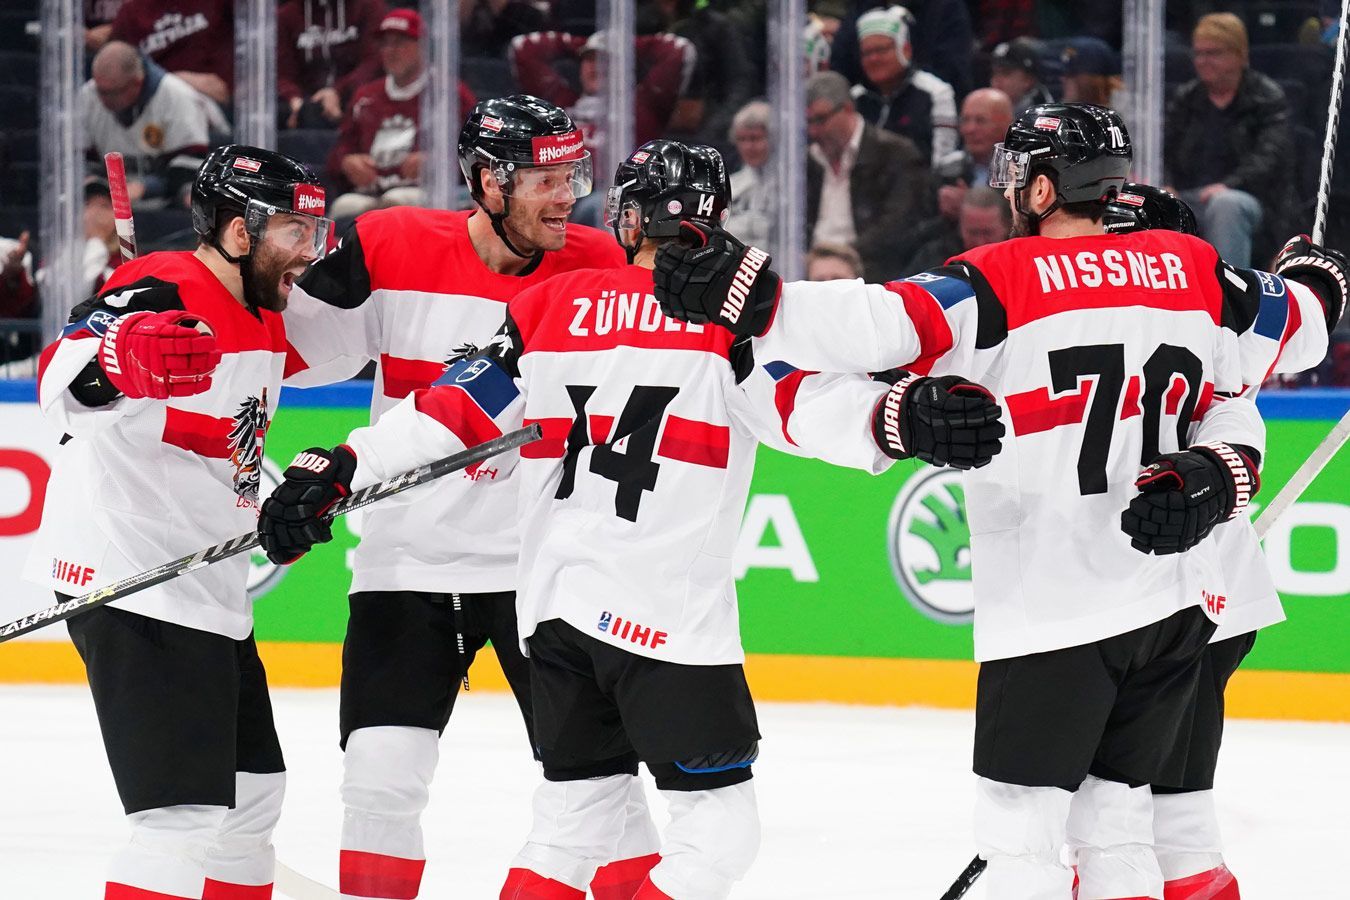 Австрия — Великобритания прогноз на матч 23 мая на ЧМ-2022 по хоккею: ставки и коэффициенты на игру